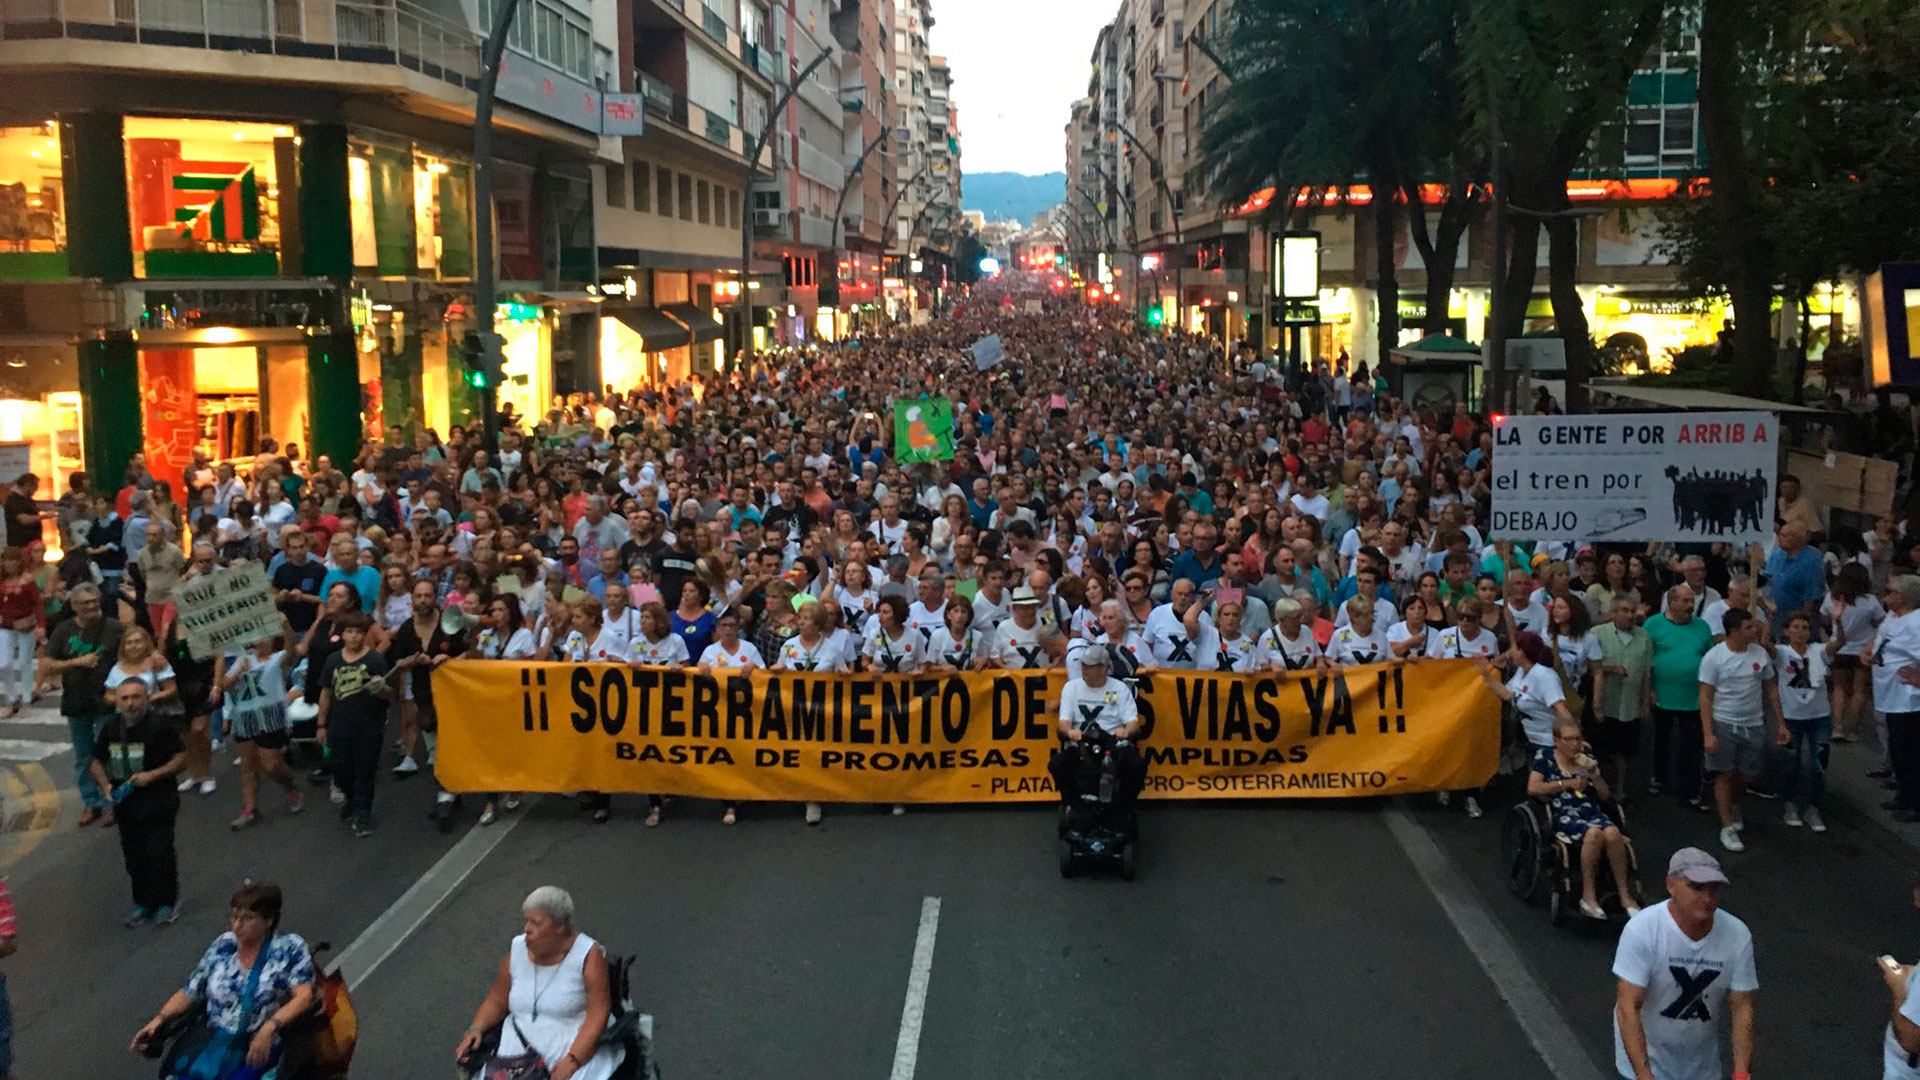 La lucha histórica de Murcia que dice ‘No al muro’